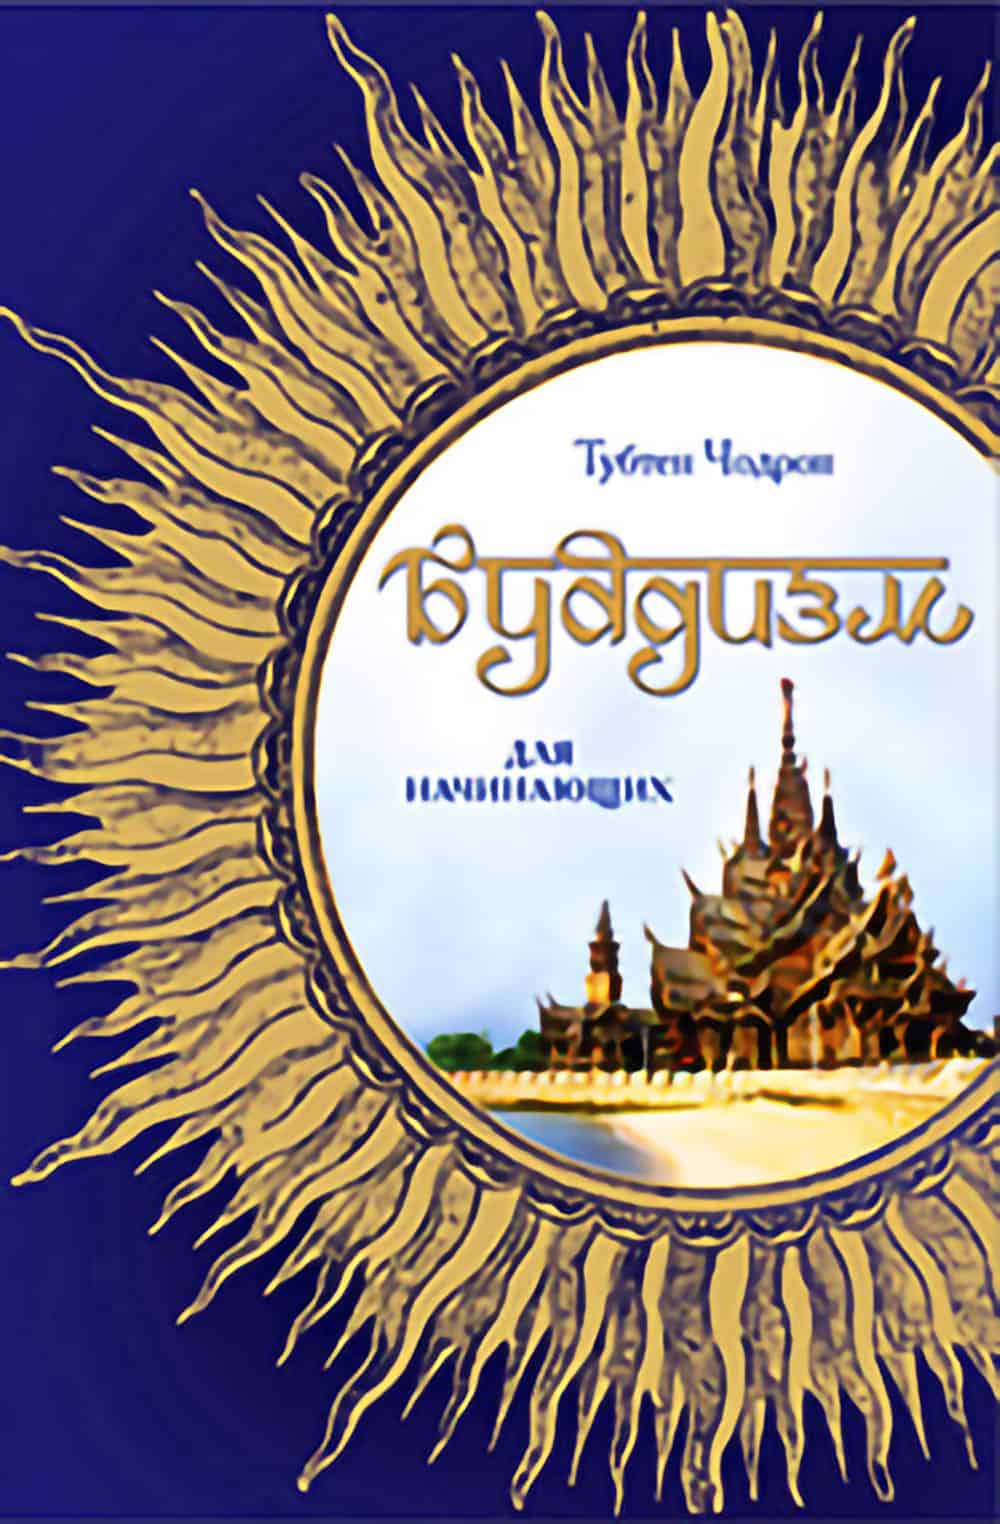 Okładka buddyzmu dla początkujących w języku rosyjskim